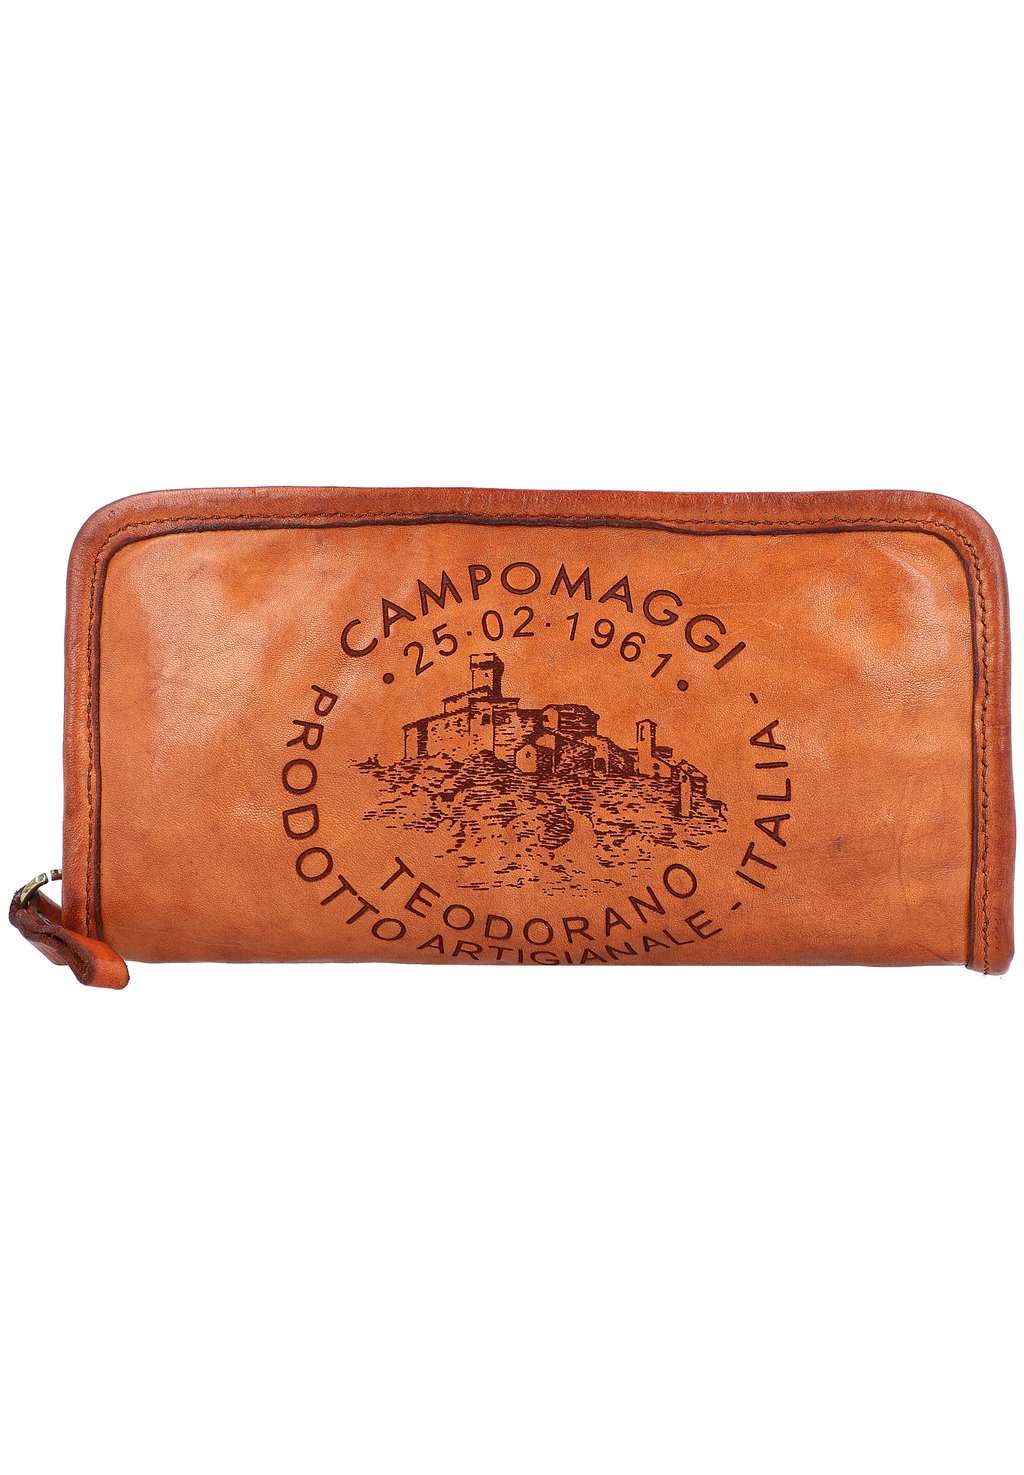 Кошелек Campomaggi, цвет cognac цена и фото